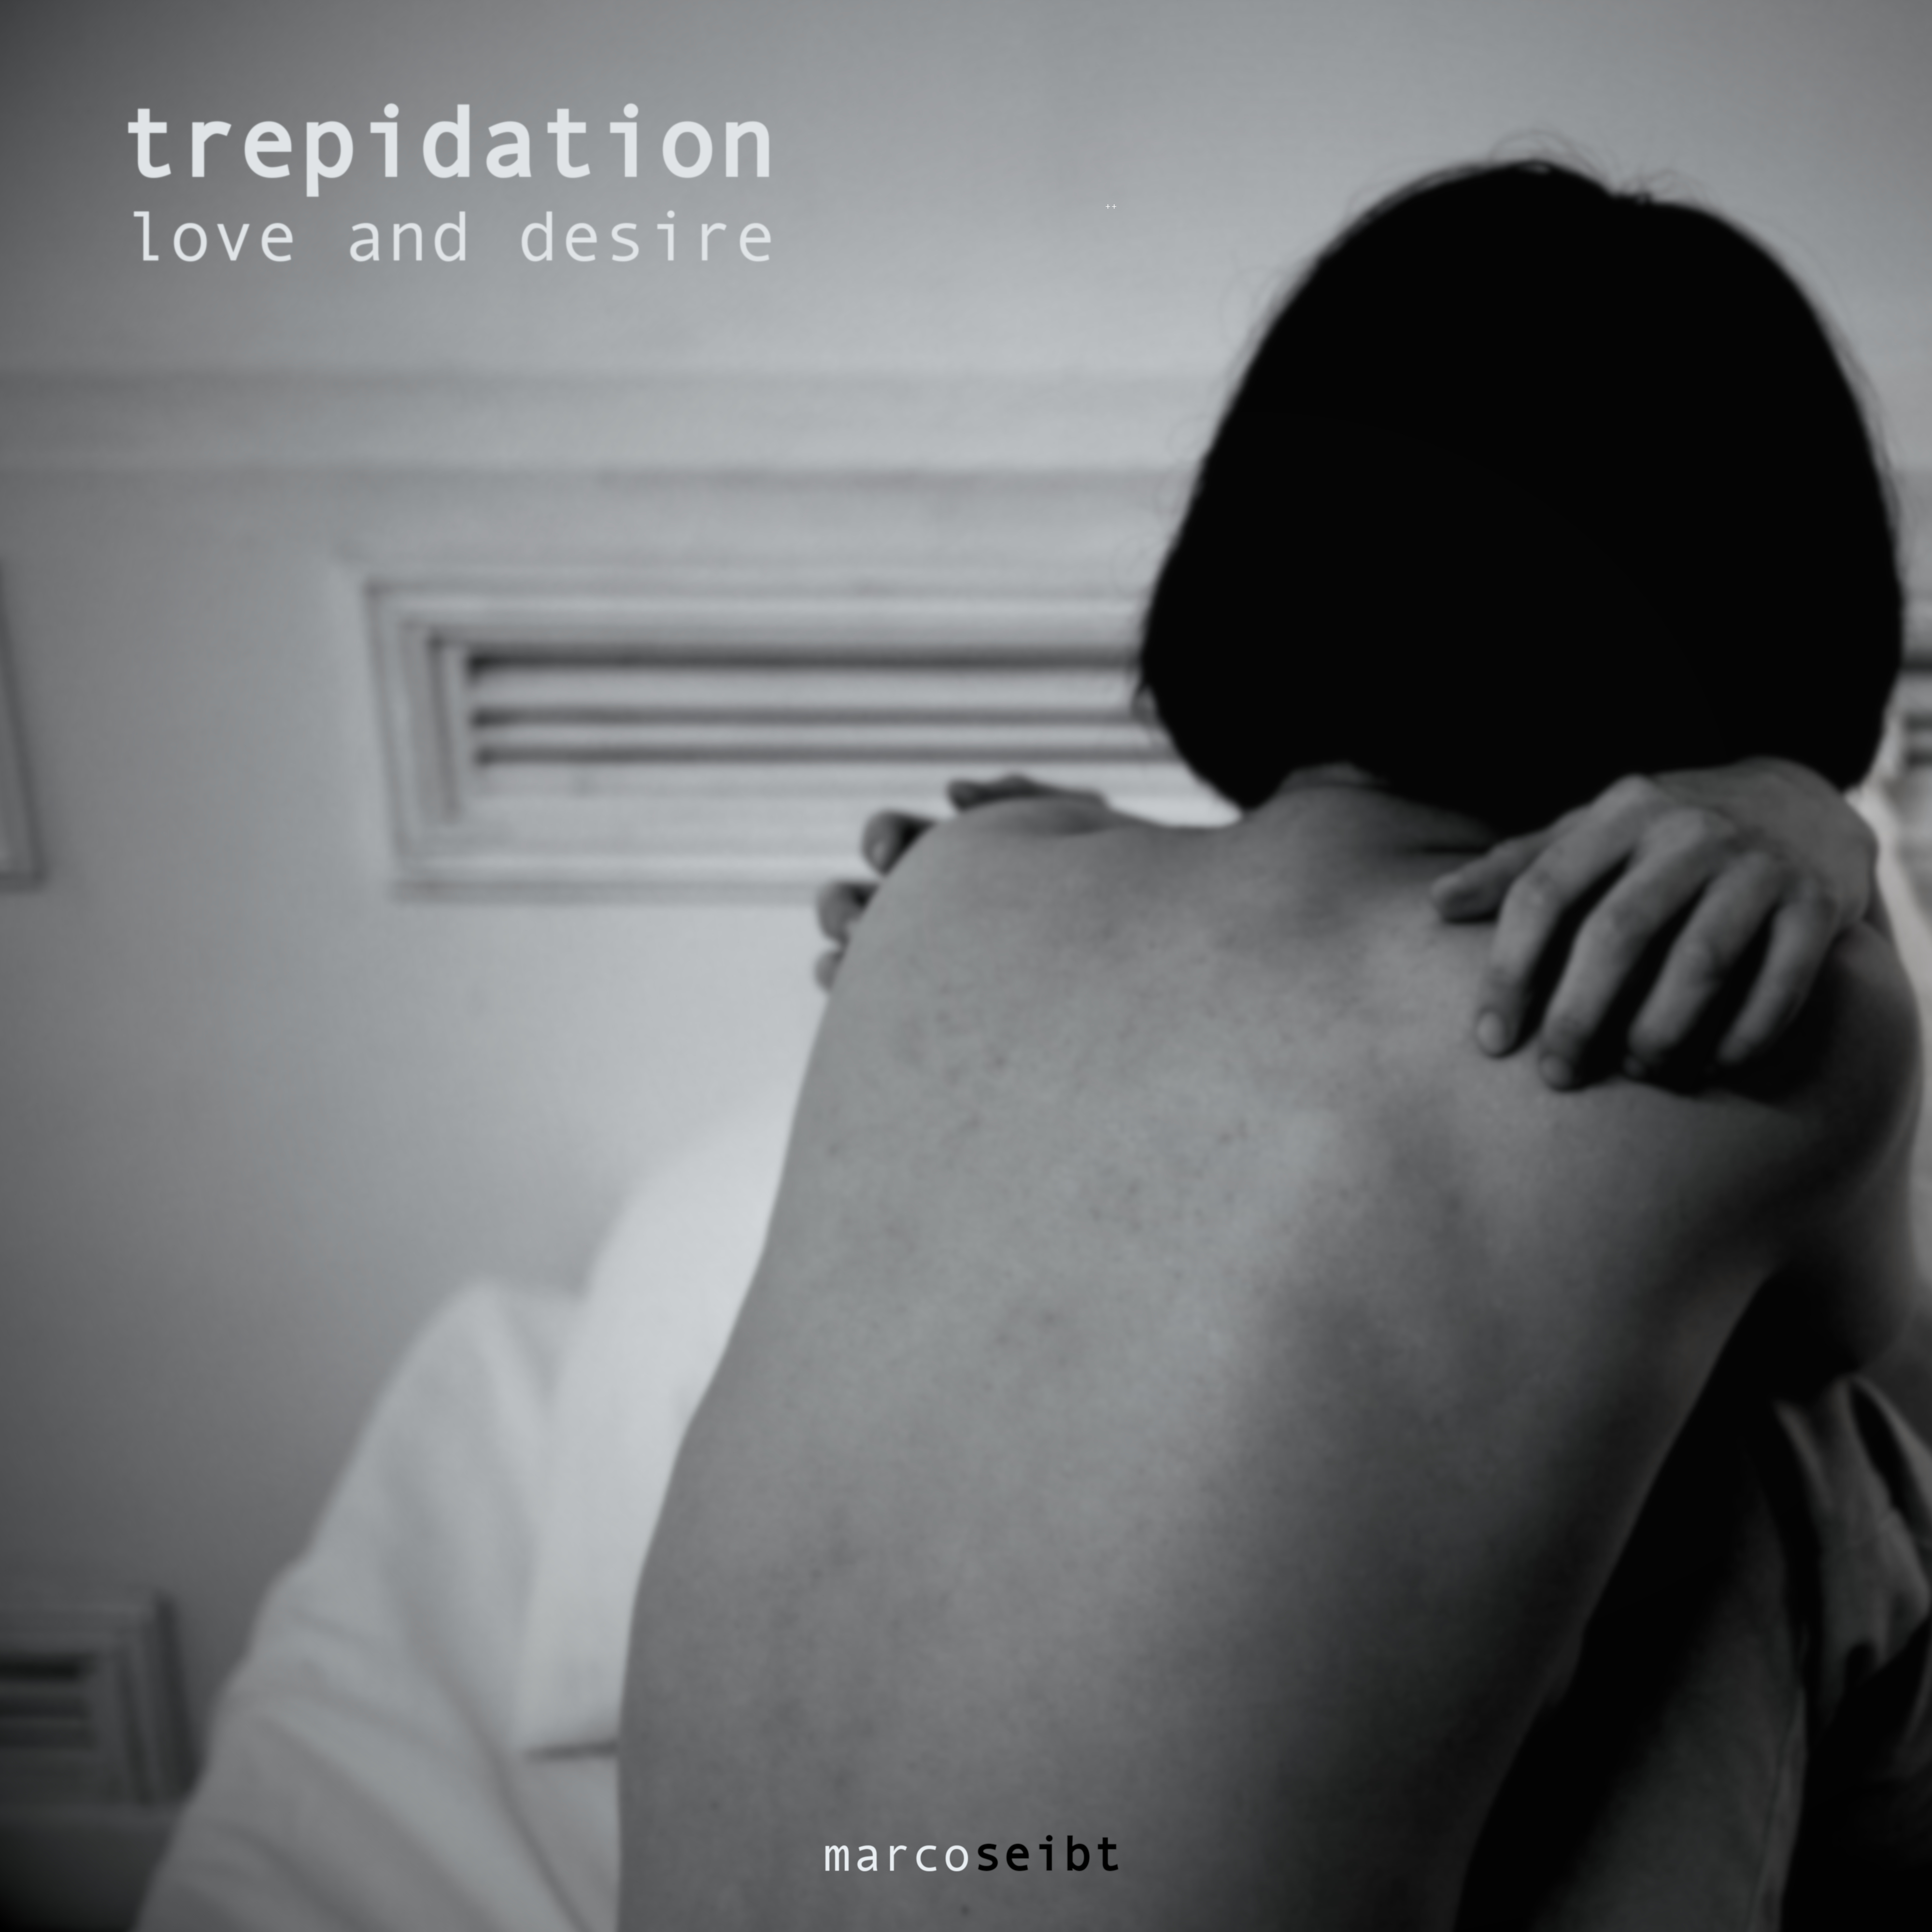 Marco Seibt - Trepidation (Love and Desire)